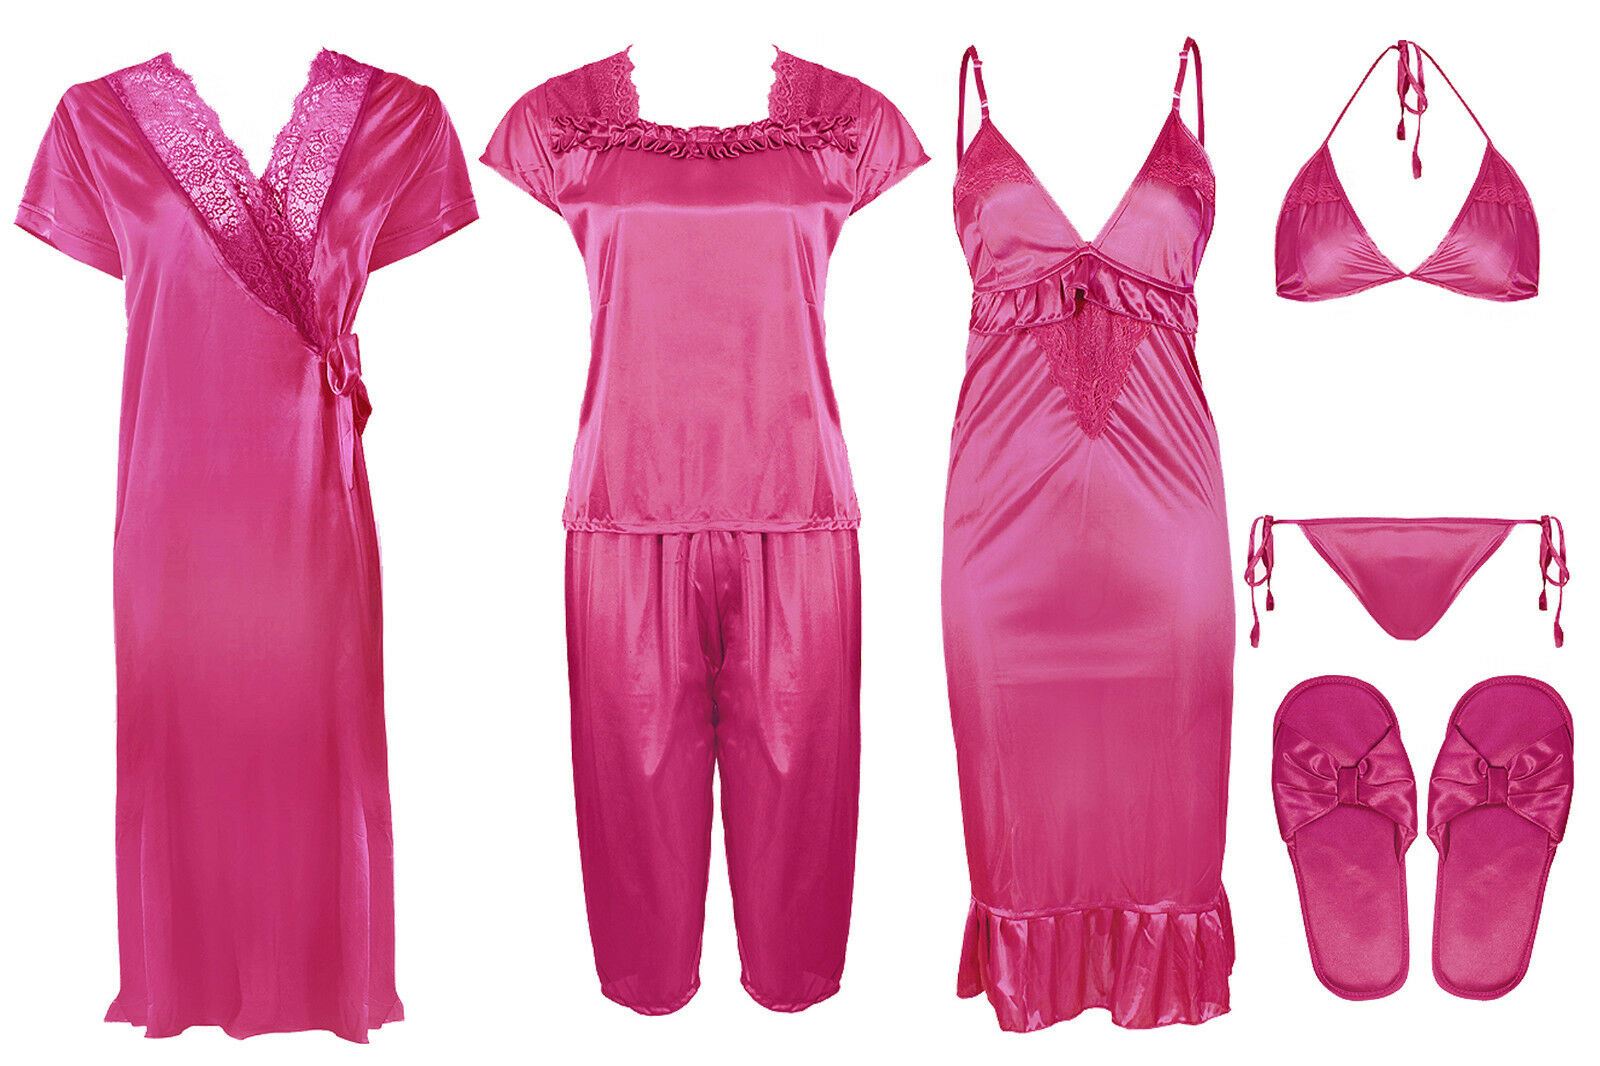 Hot Pink 1 / One Size Ladies Satin Nightwear Set / Pyjama Set The Orange Tags